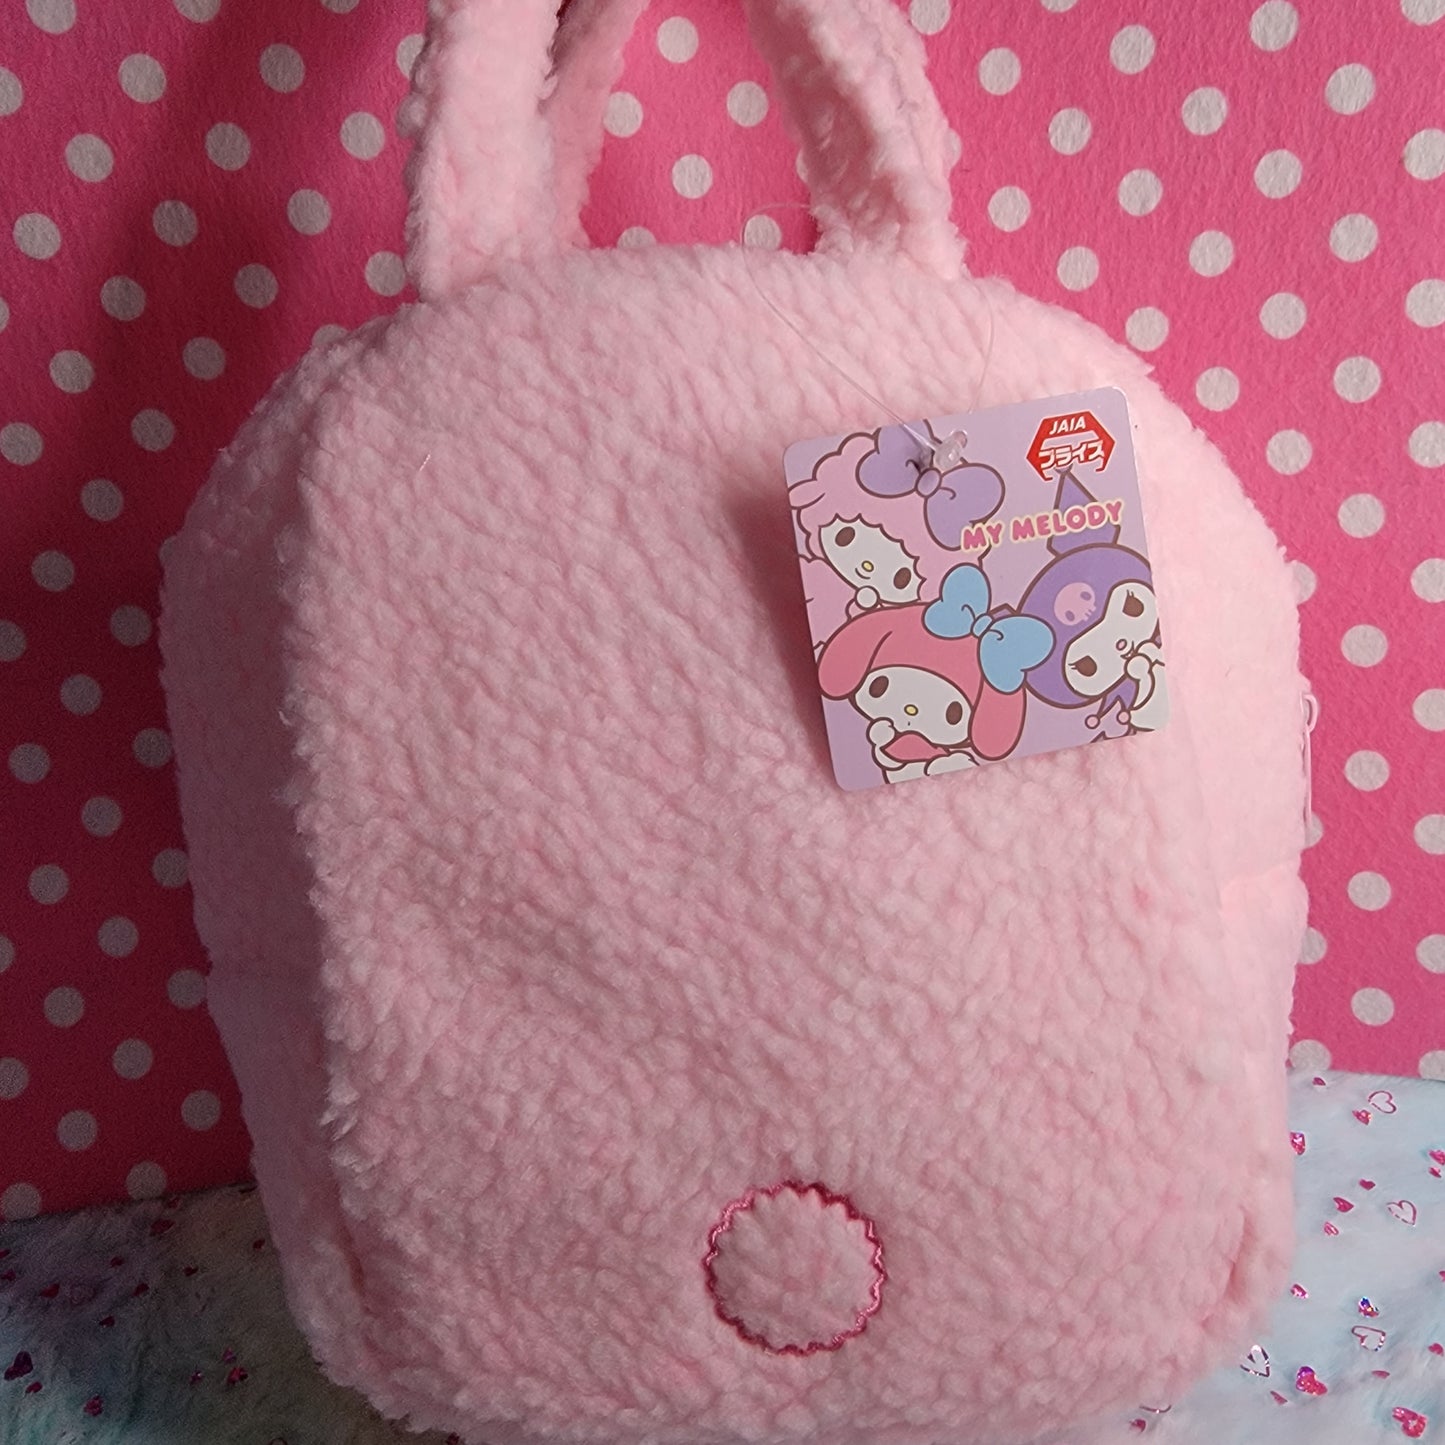 Sanrio Characters, Fuwa Fuwa, Fluffy Pastel Plush Handbag